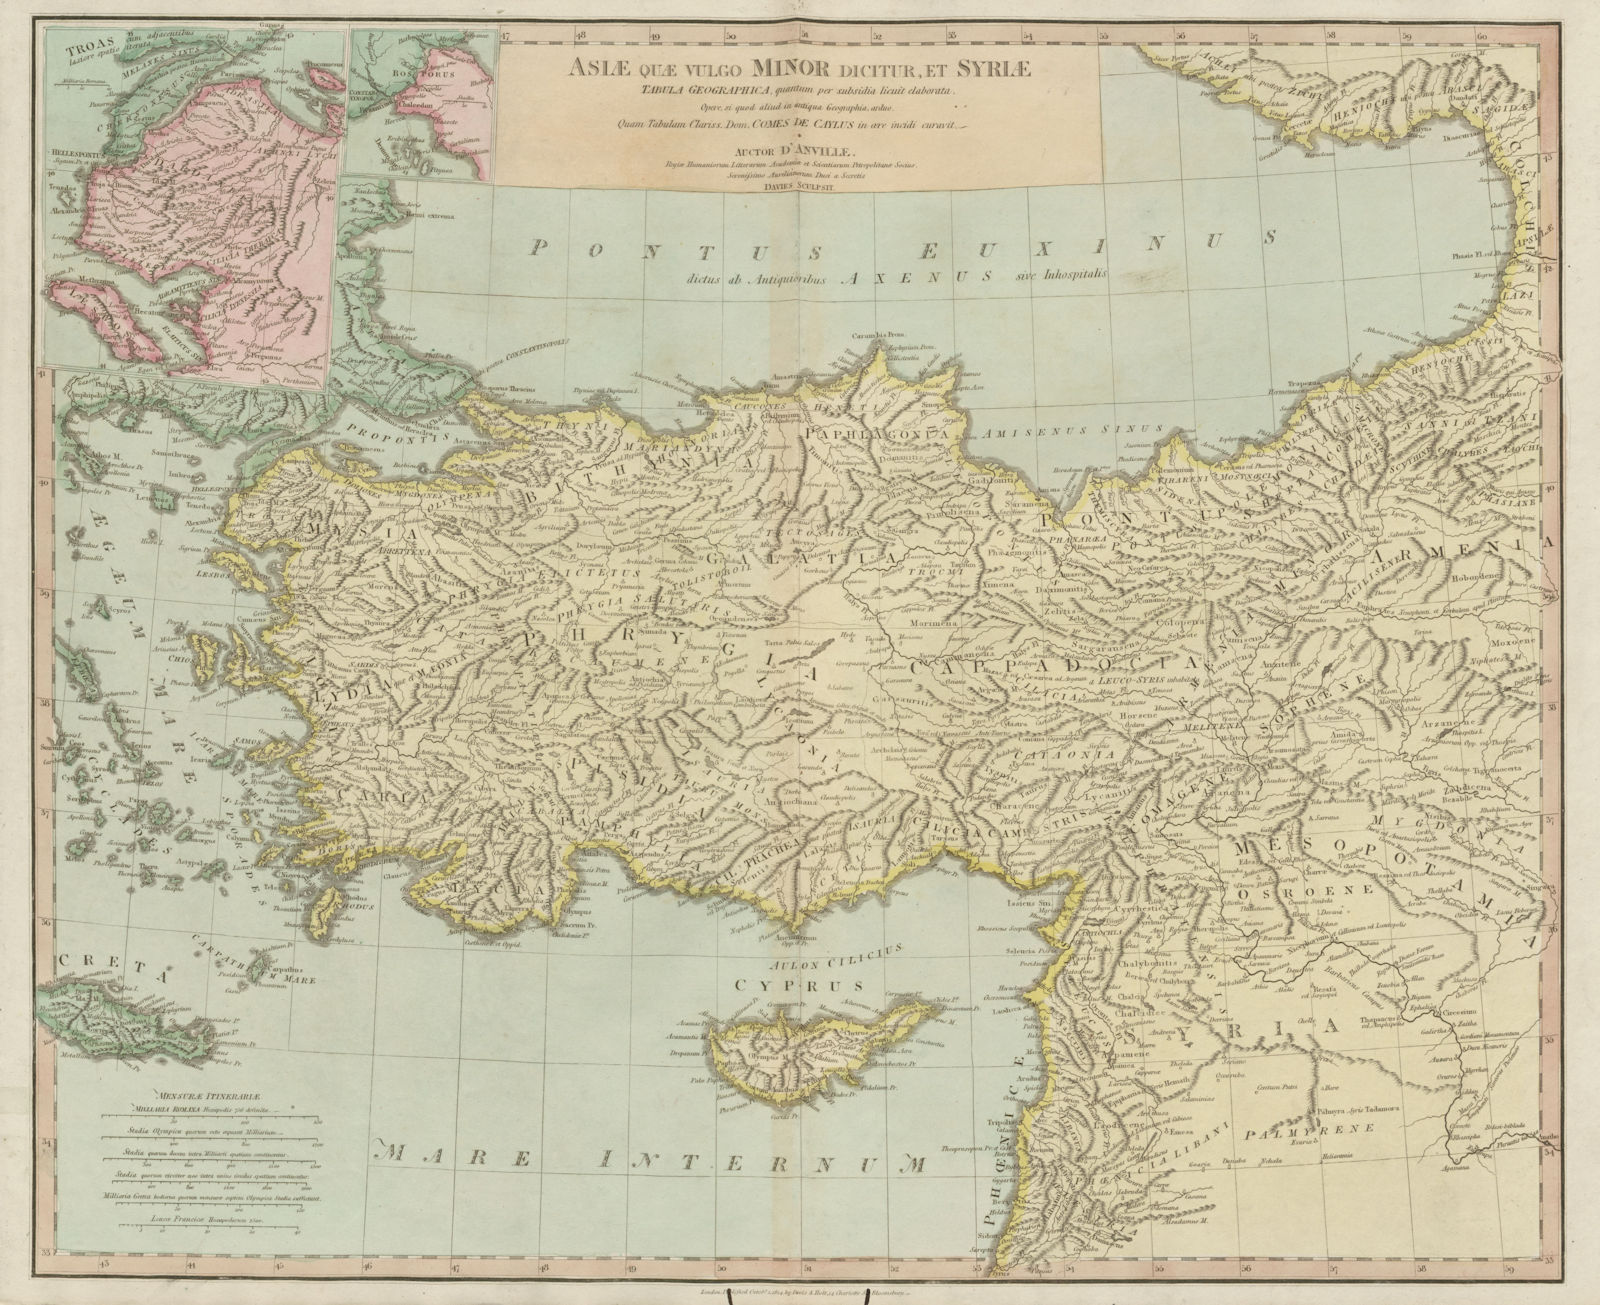 "Asiae quae vulgo Minor dicitur, et Syriae". Ancient Turkey. D'ANVILLE 1815 map